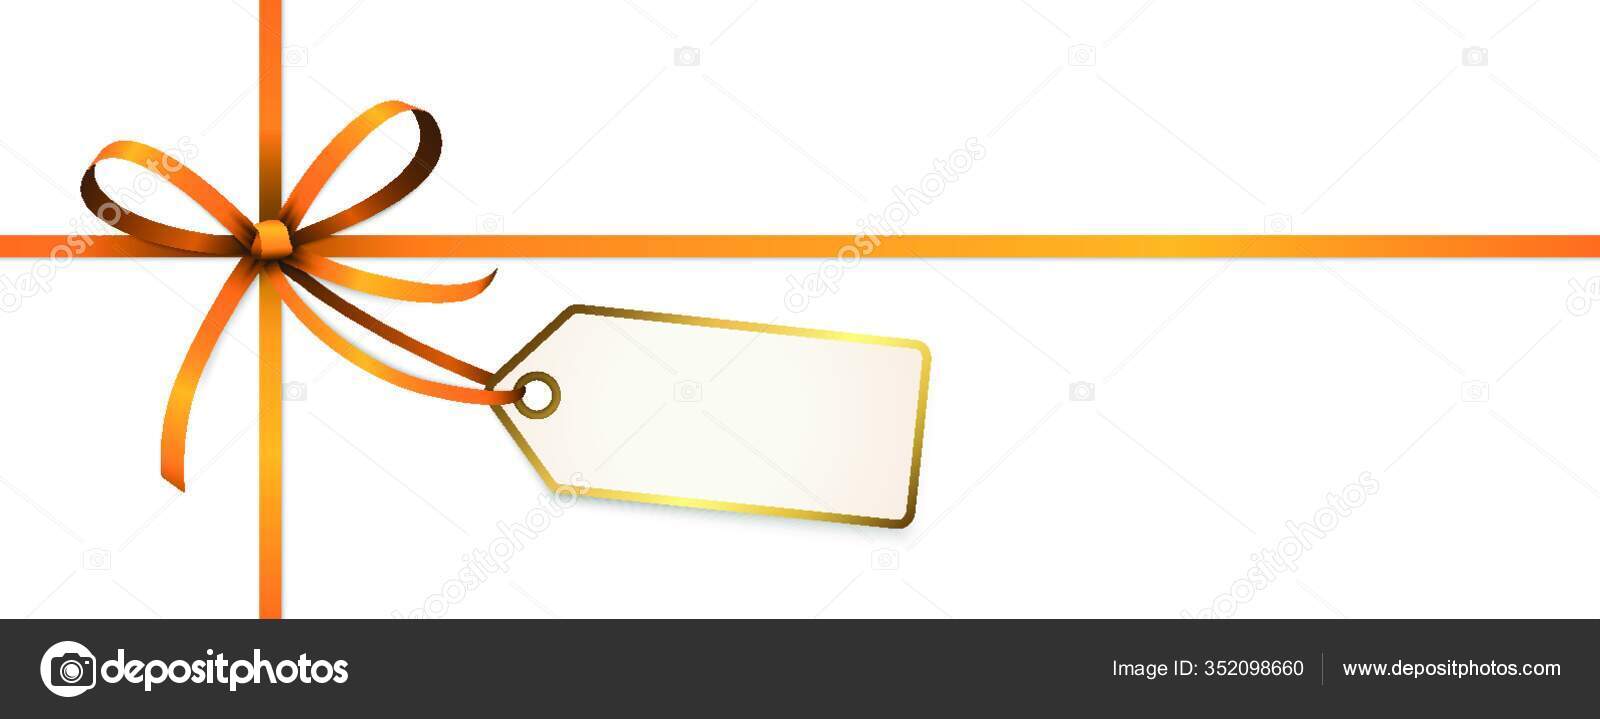 orange ribbon and bow isolated on white background, Stock image